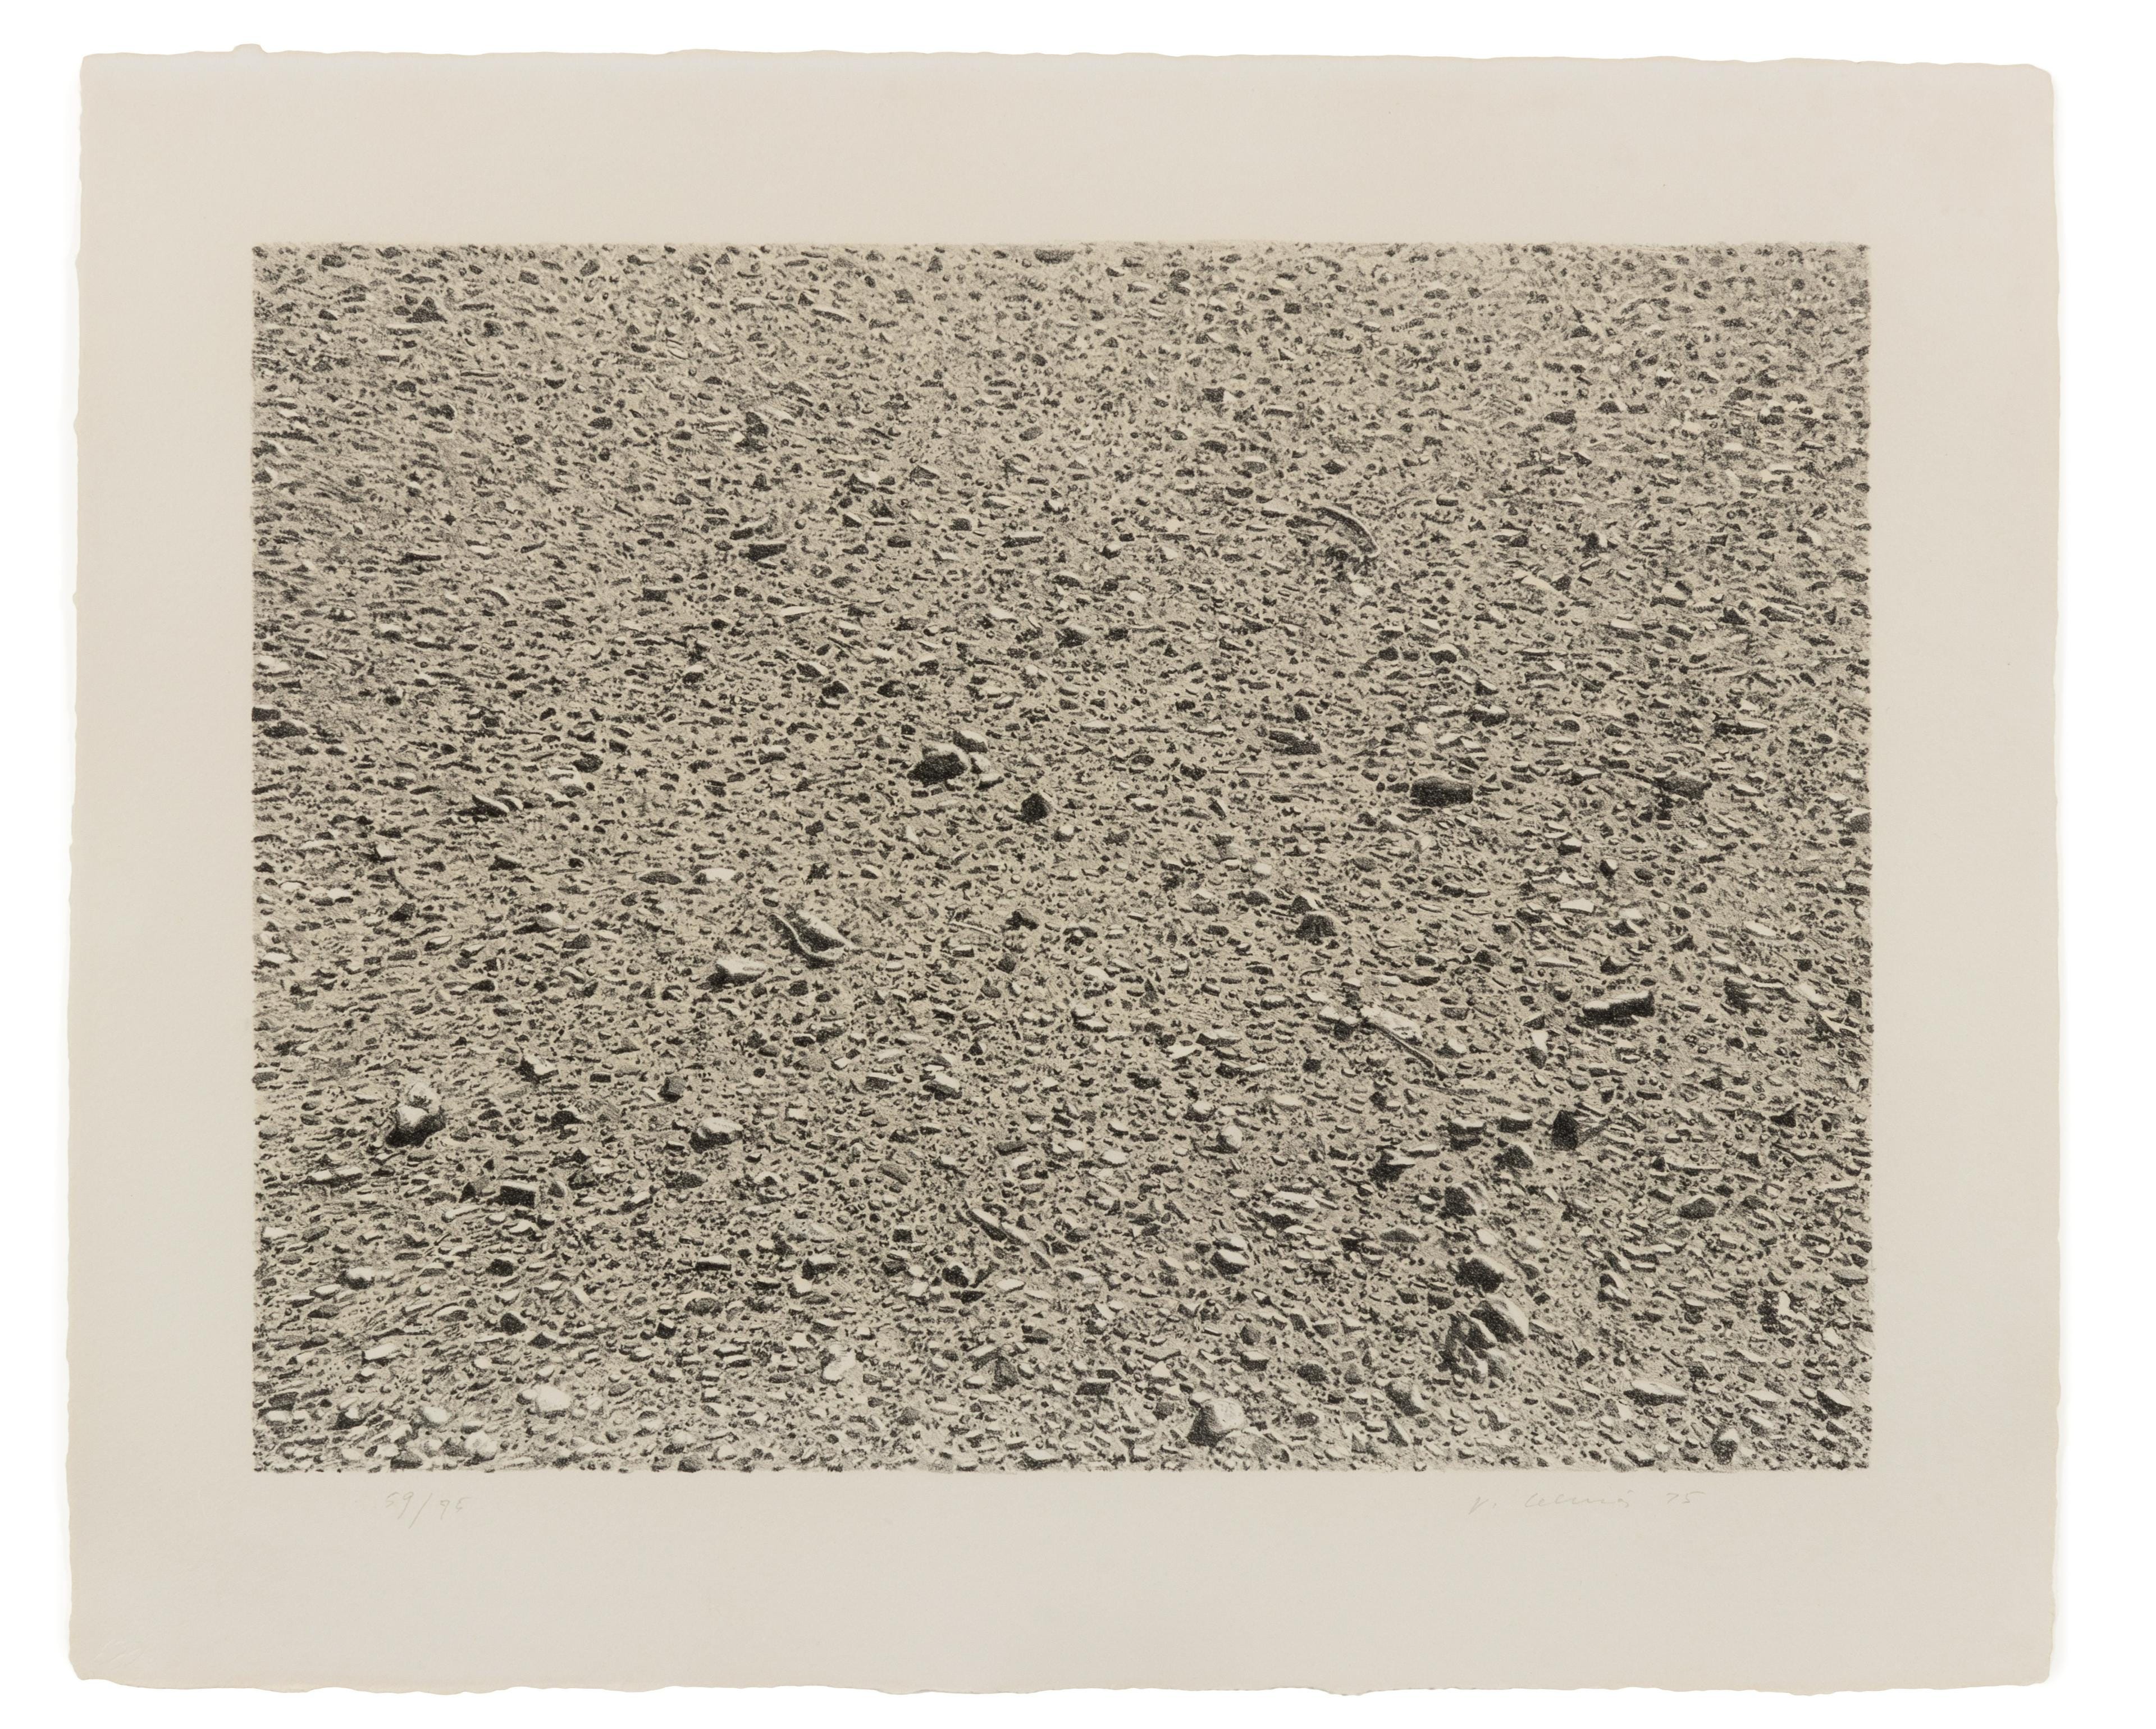 Untitled (Desert), 1975 (B. Davis. 206; Rippner 49)